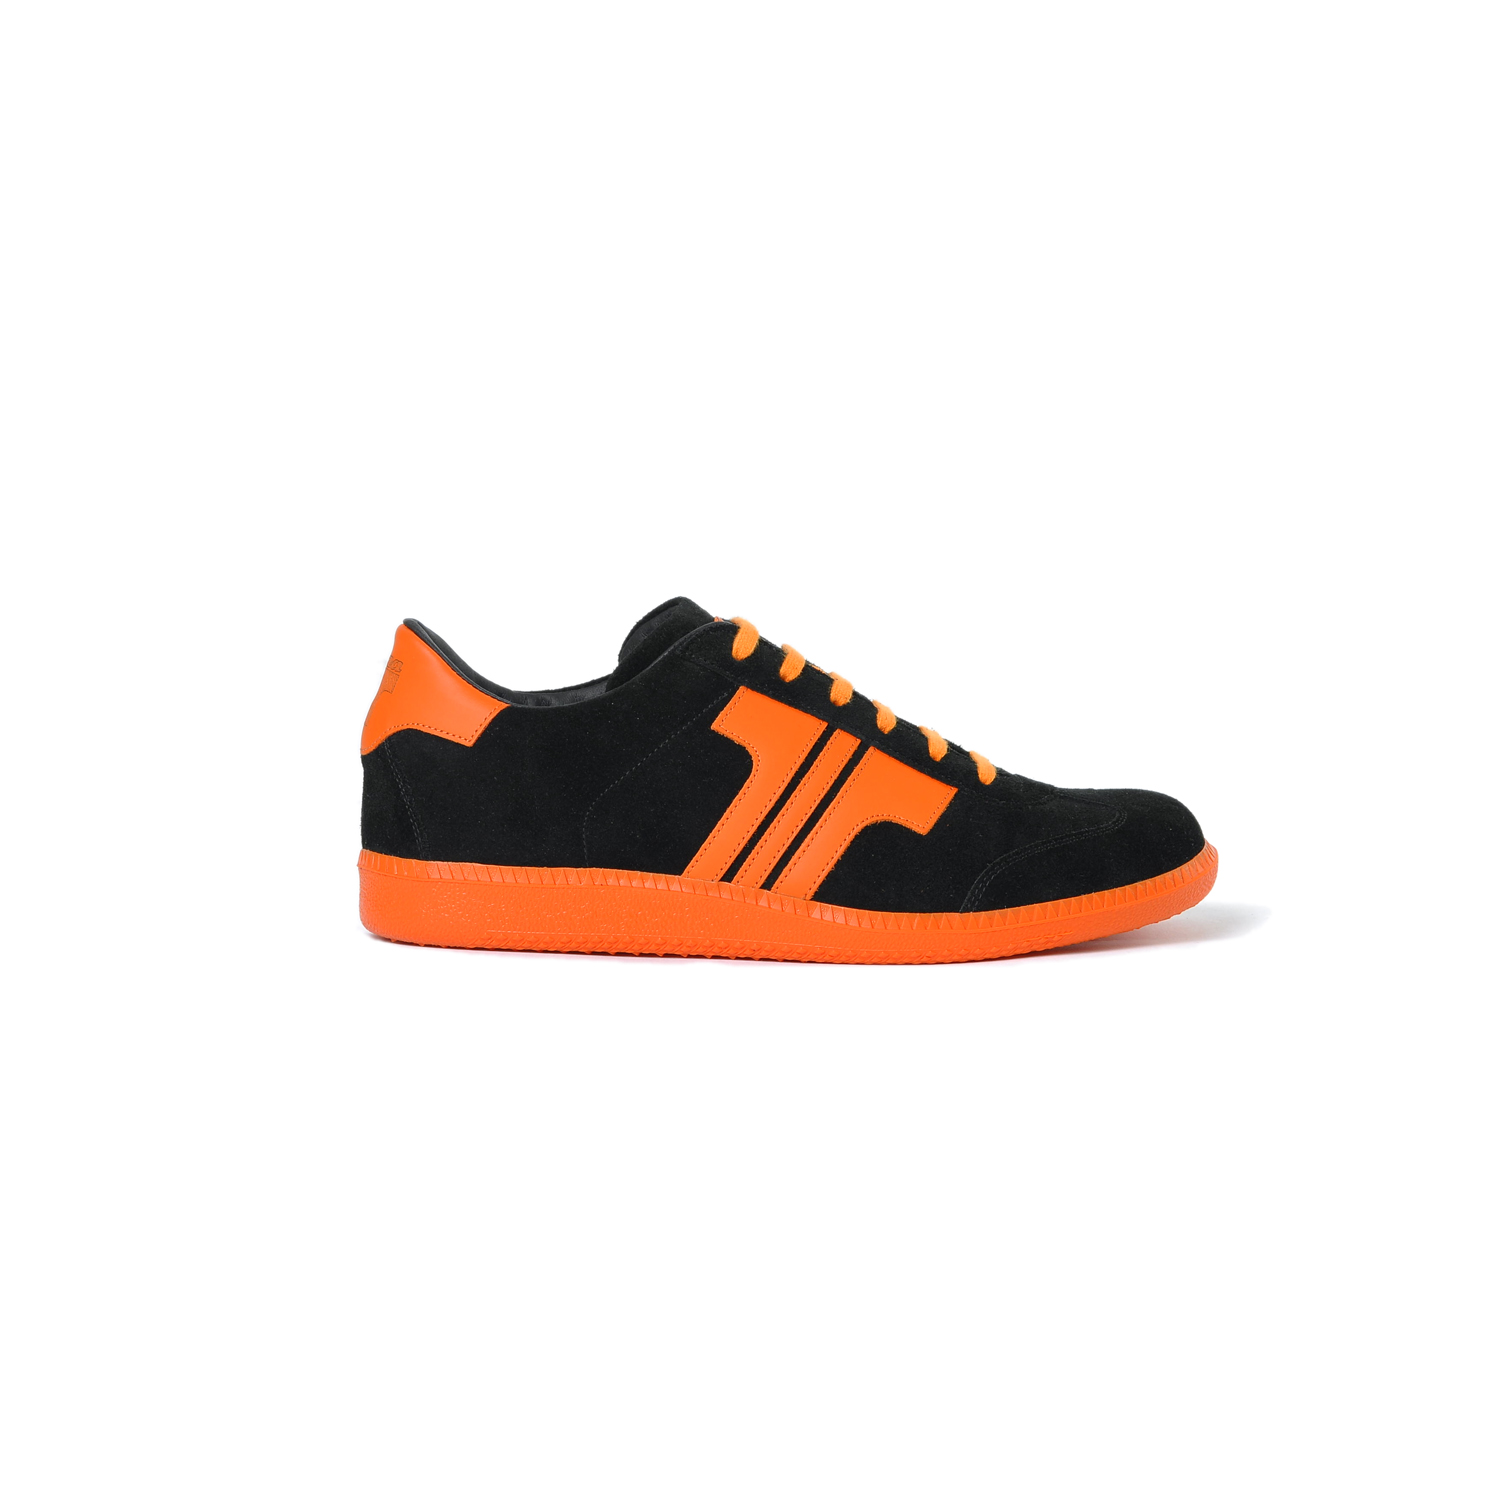 Tisza cipő - Comfort - Fekete-narancs